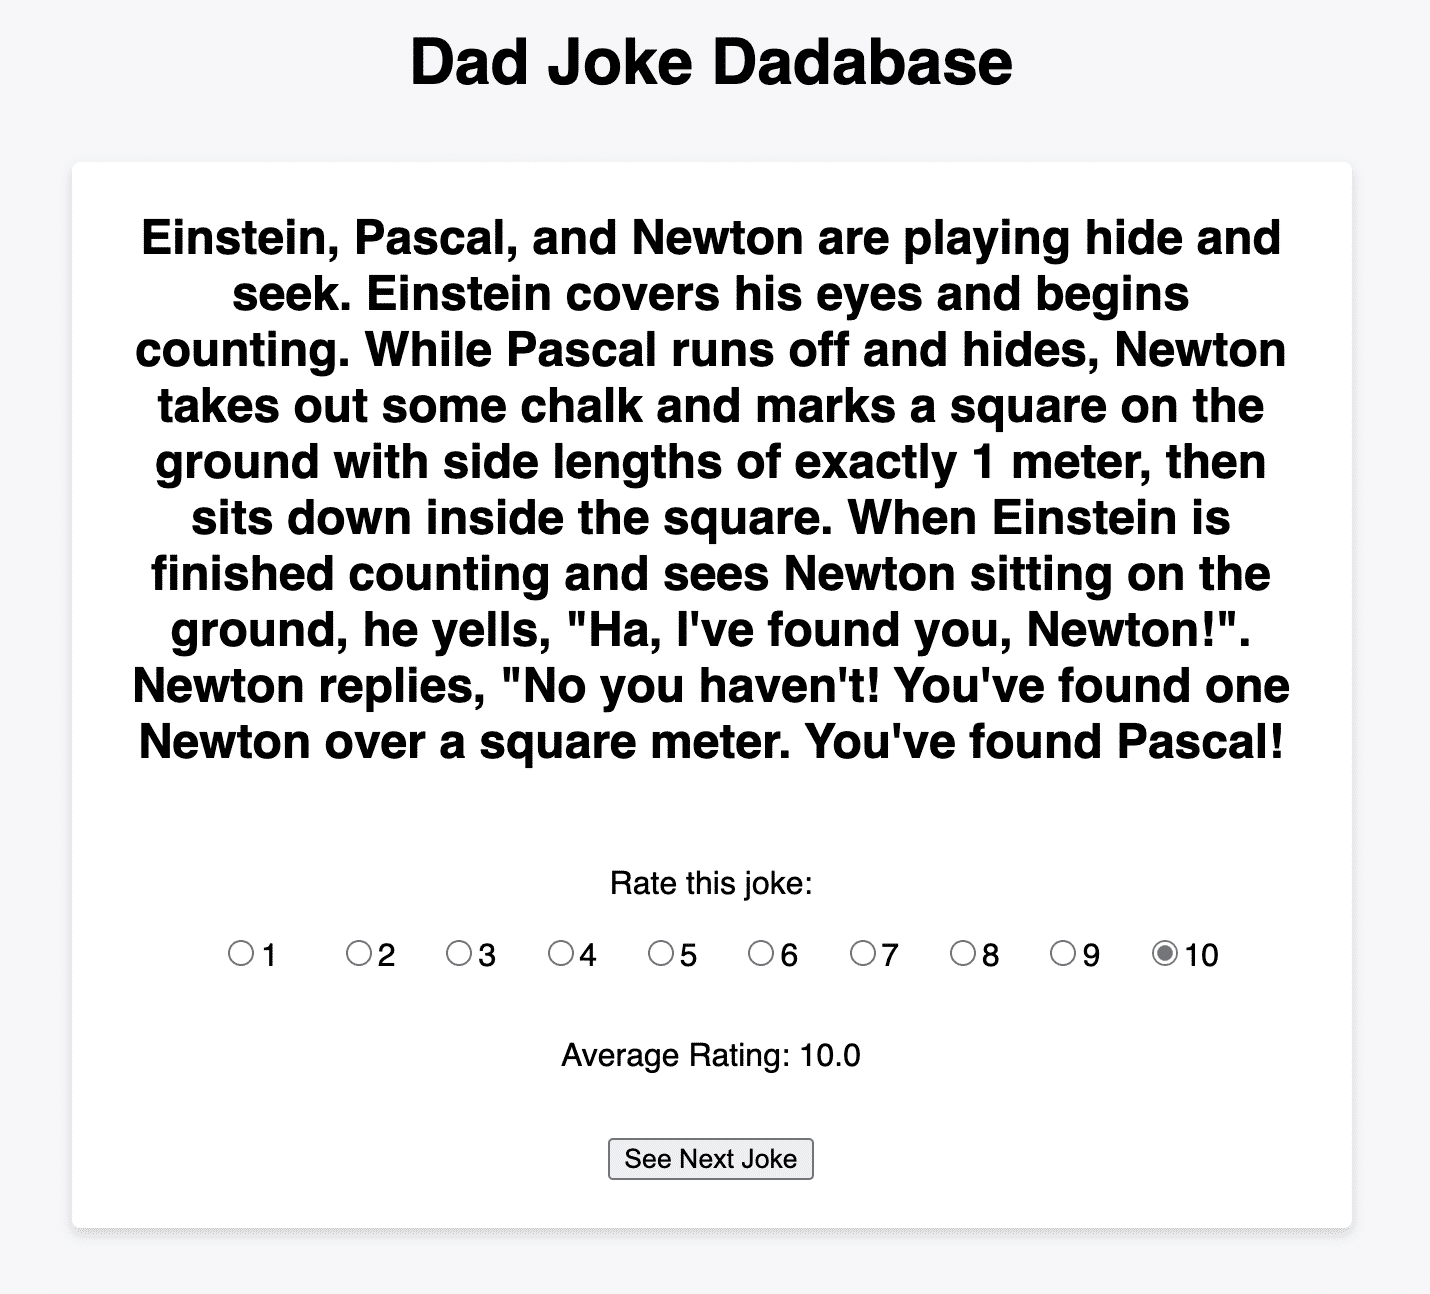 Dad joke “dadabase” user interface allows you to rate each joke